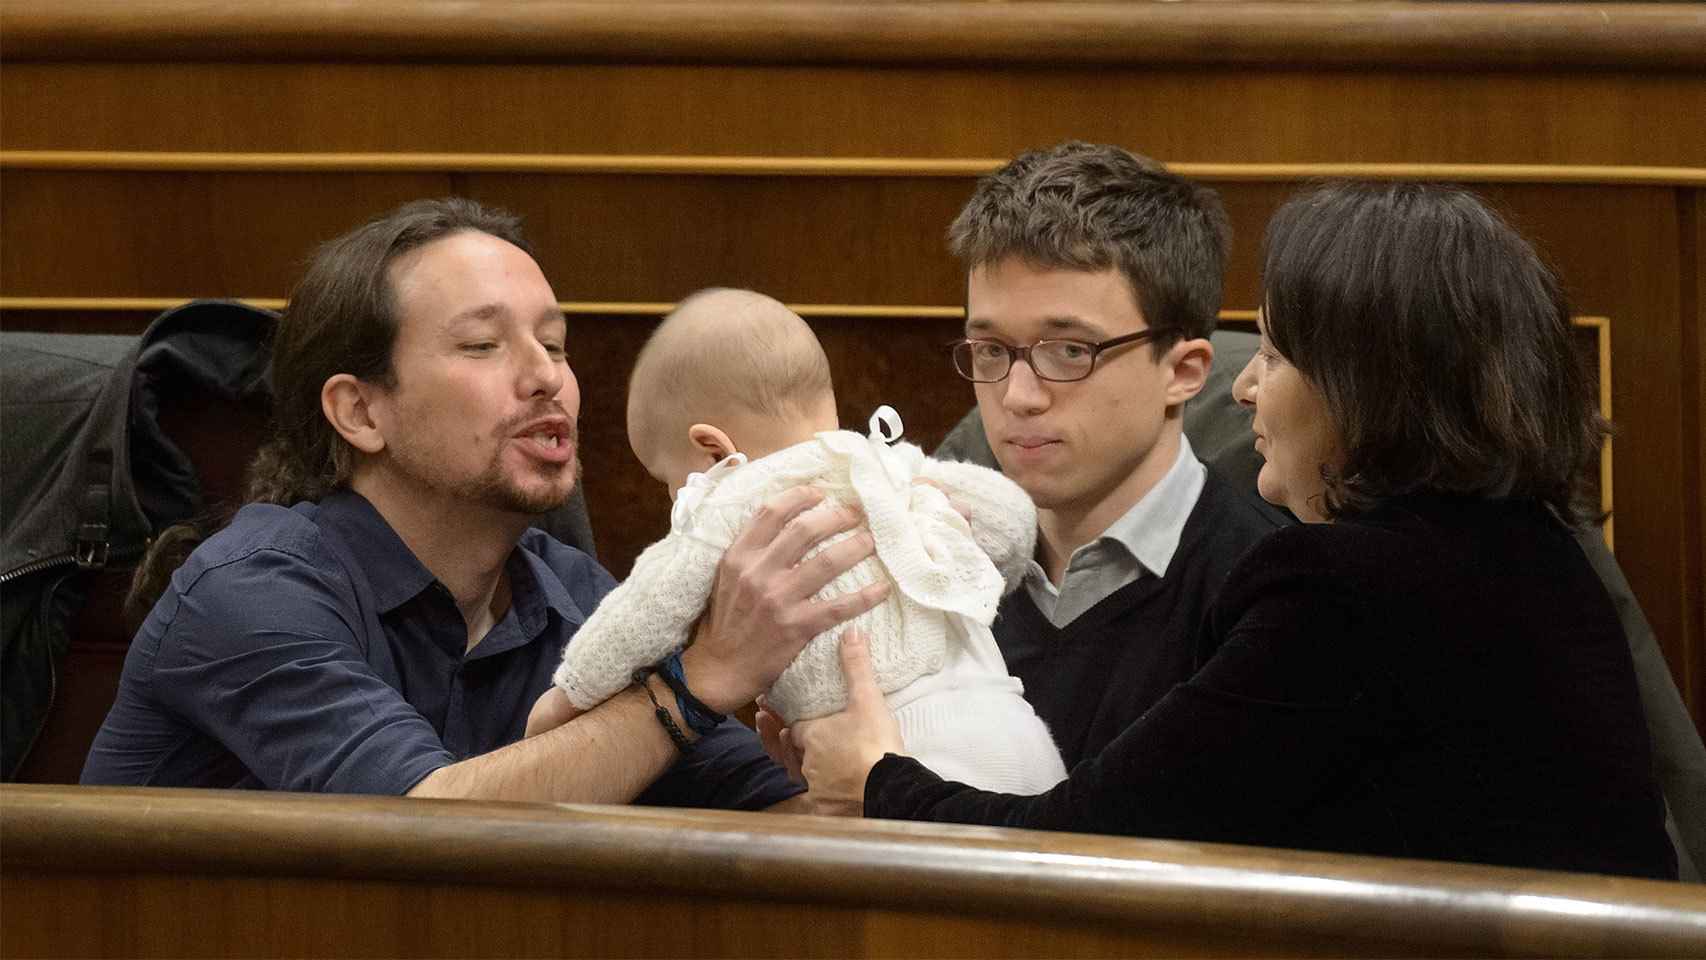 Pablo Iglesias toma en sus manos a la bebé de Bescansa.